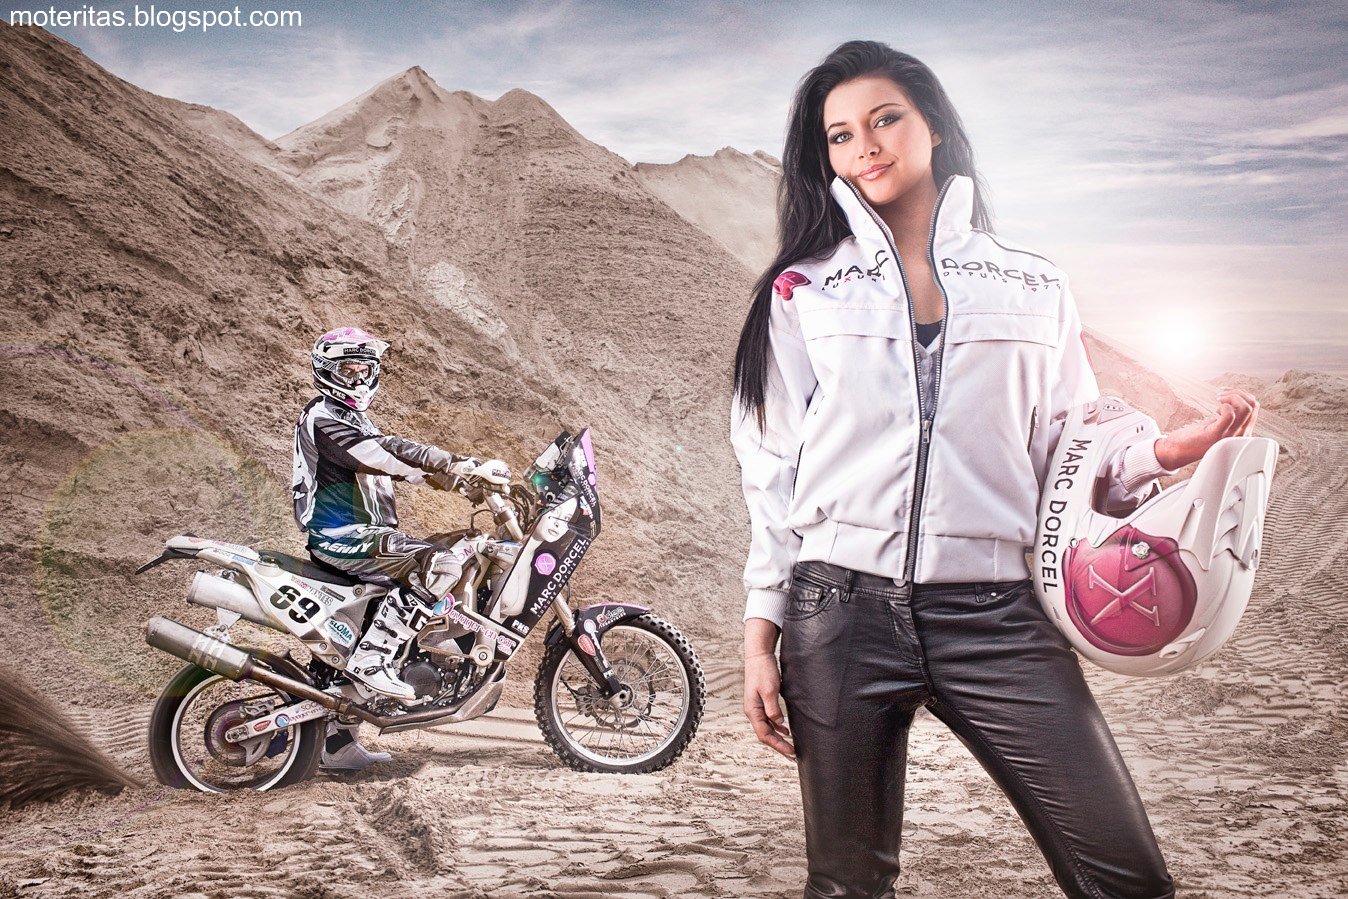 http://2.bp.blogspot.com/-phWgxcVQ4xE/T1o_GUjMxLI/AAAAAAAAAuk/XATouh2QbrE/s1600/rally-dakar-Yamaha-450-WRF-wallpapers-mujeres-motos-motocross-232%2B%255Bmoteritas.blogspot.com%255D.jpg